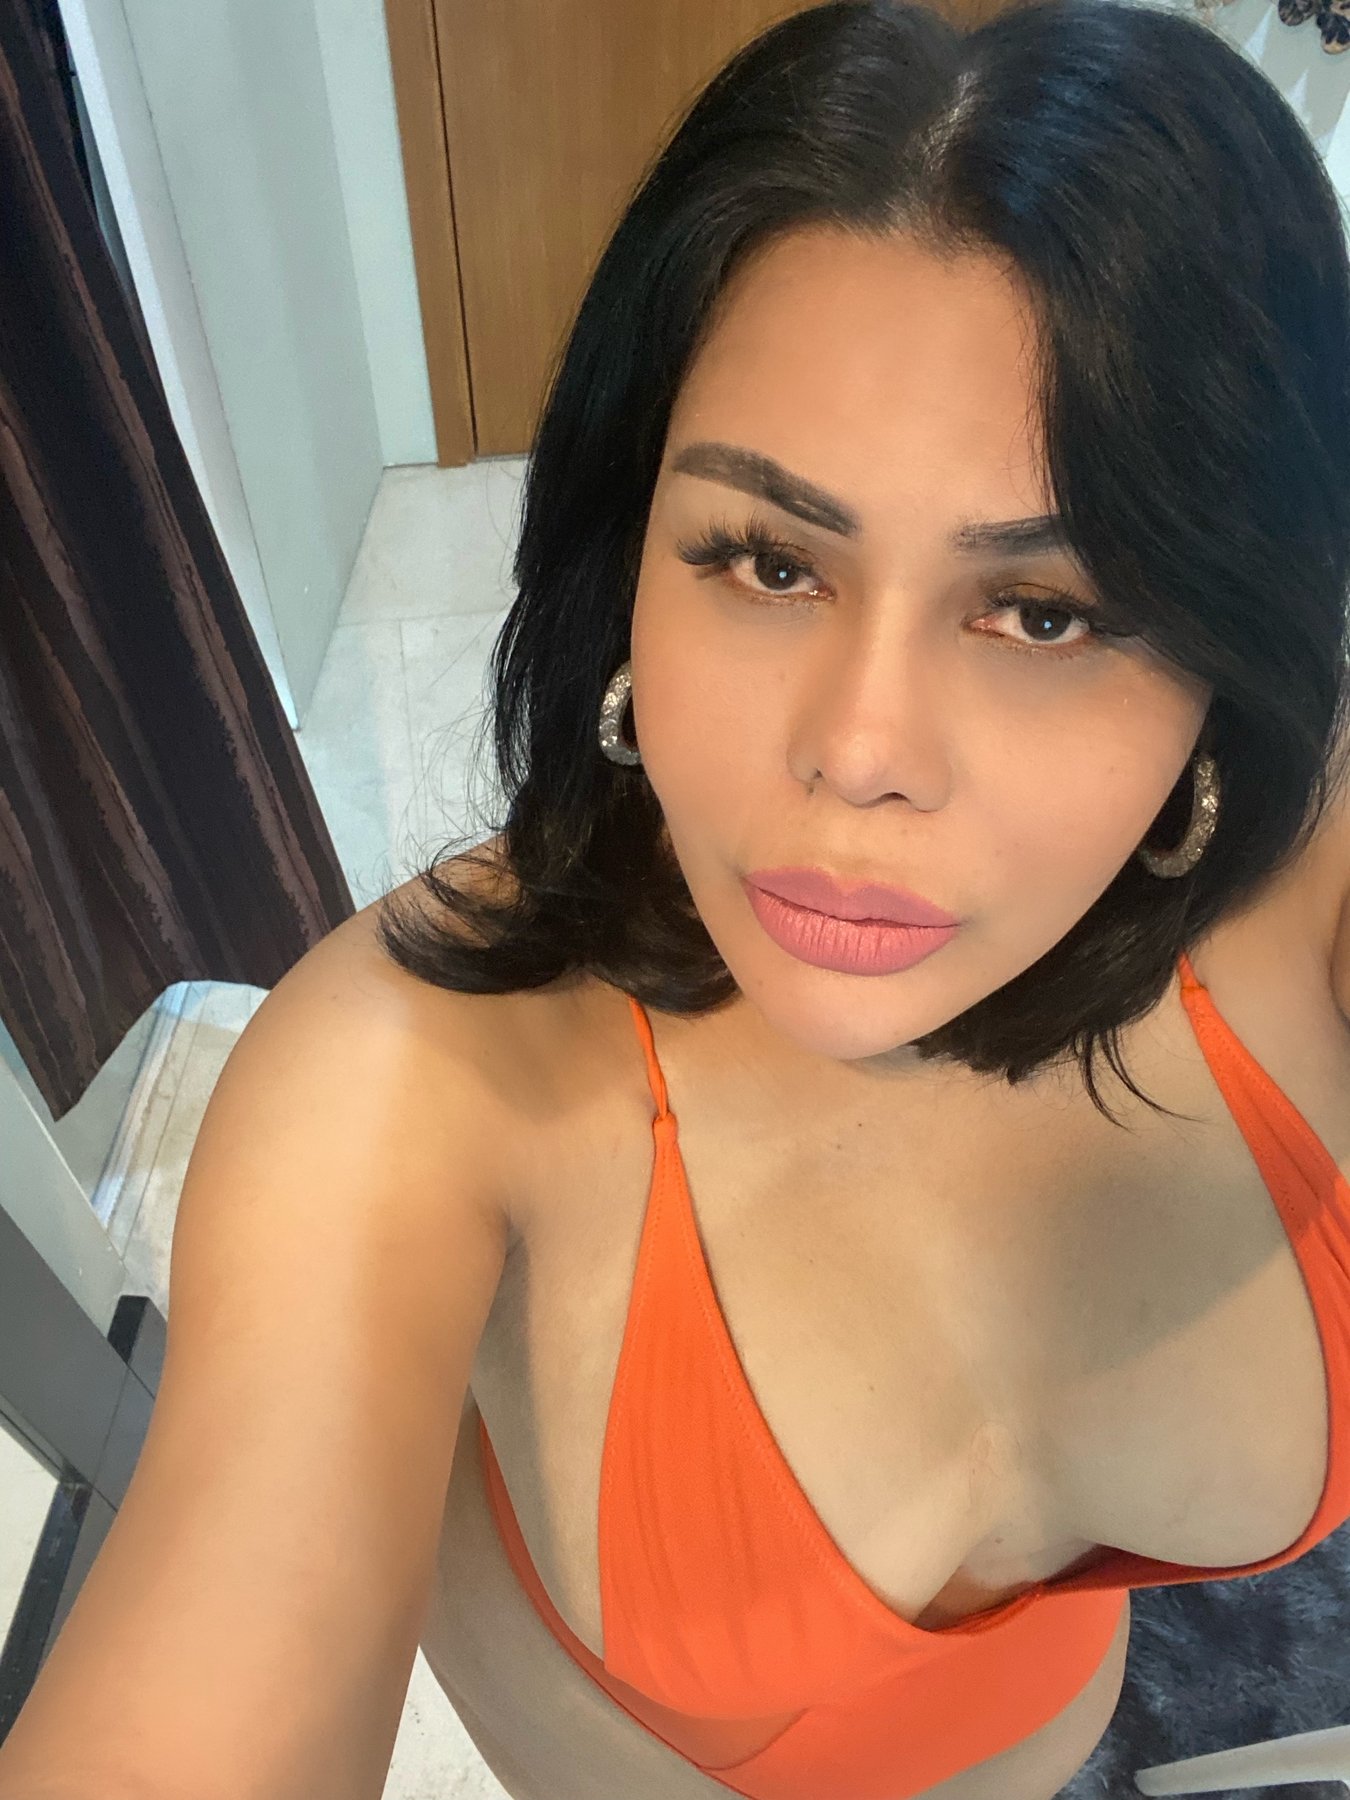 Kuala Lumpur Ladyboy Escort - Shemale Sexy Rossa, Malaysian Transsexual escort in Kuala Lumpur